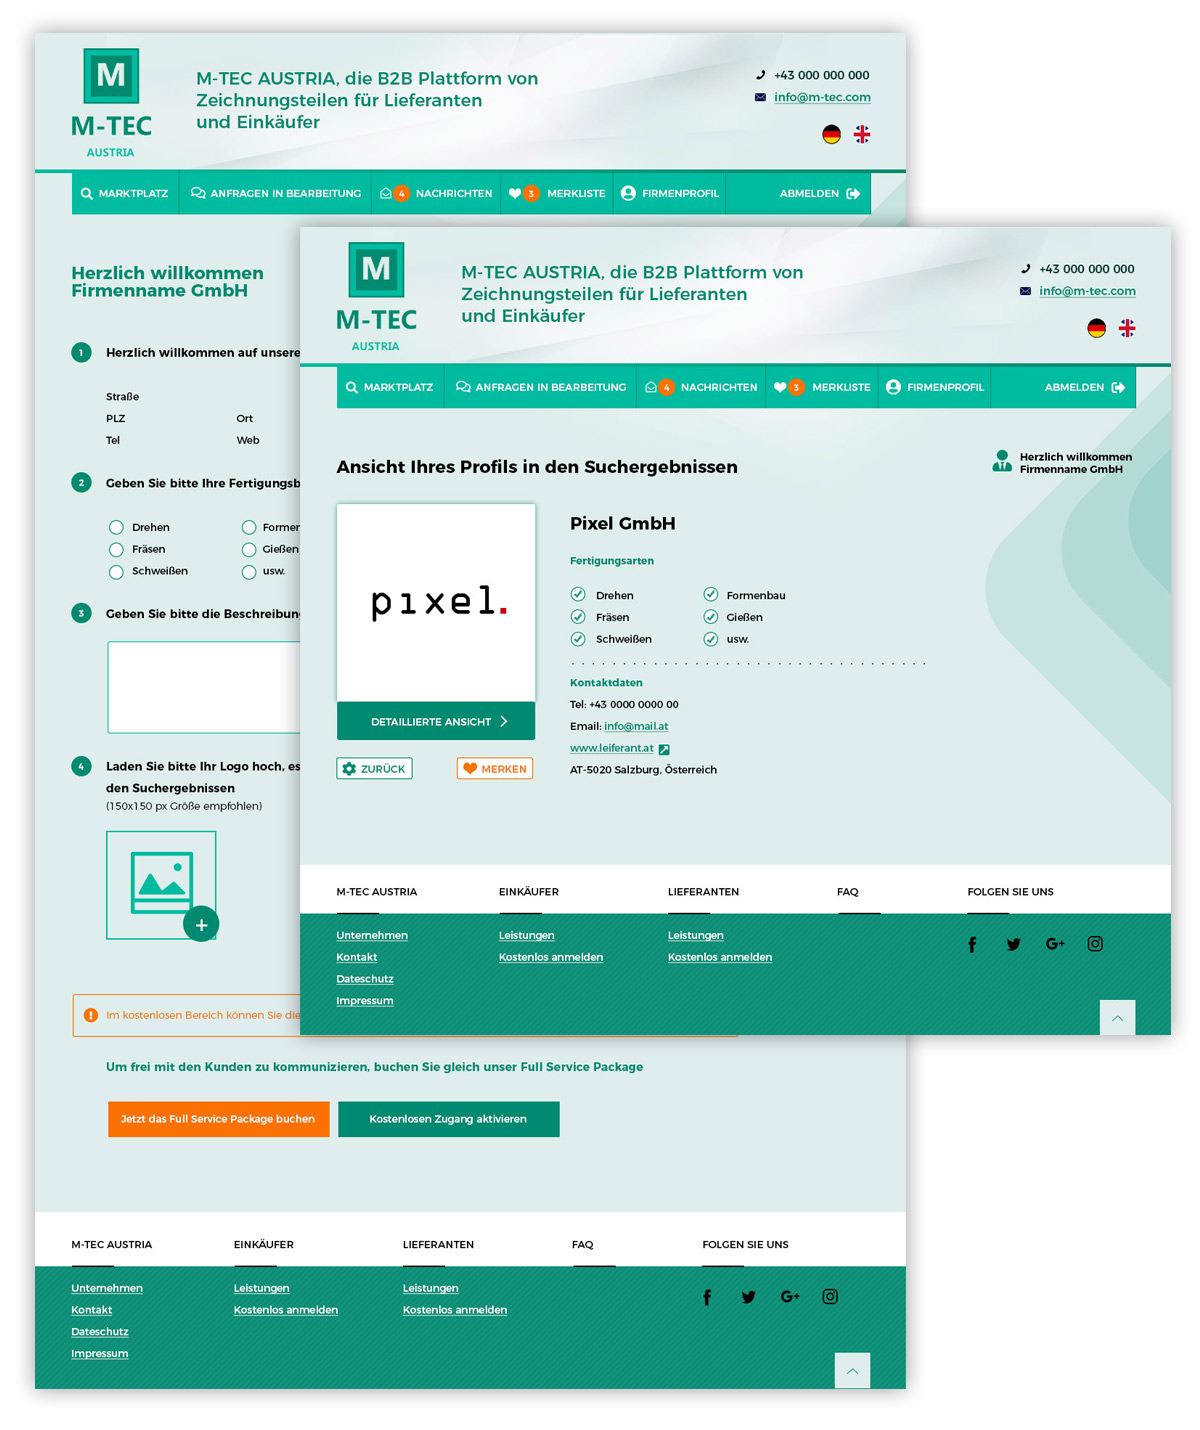 Дизайн сайта для M-TEC Austria - изображение 3